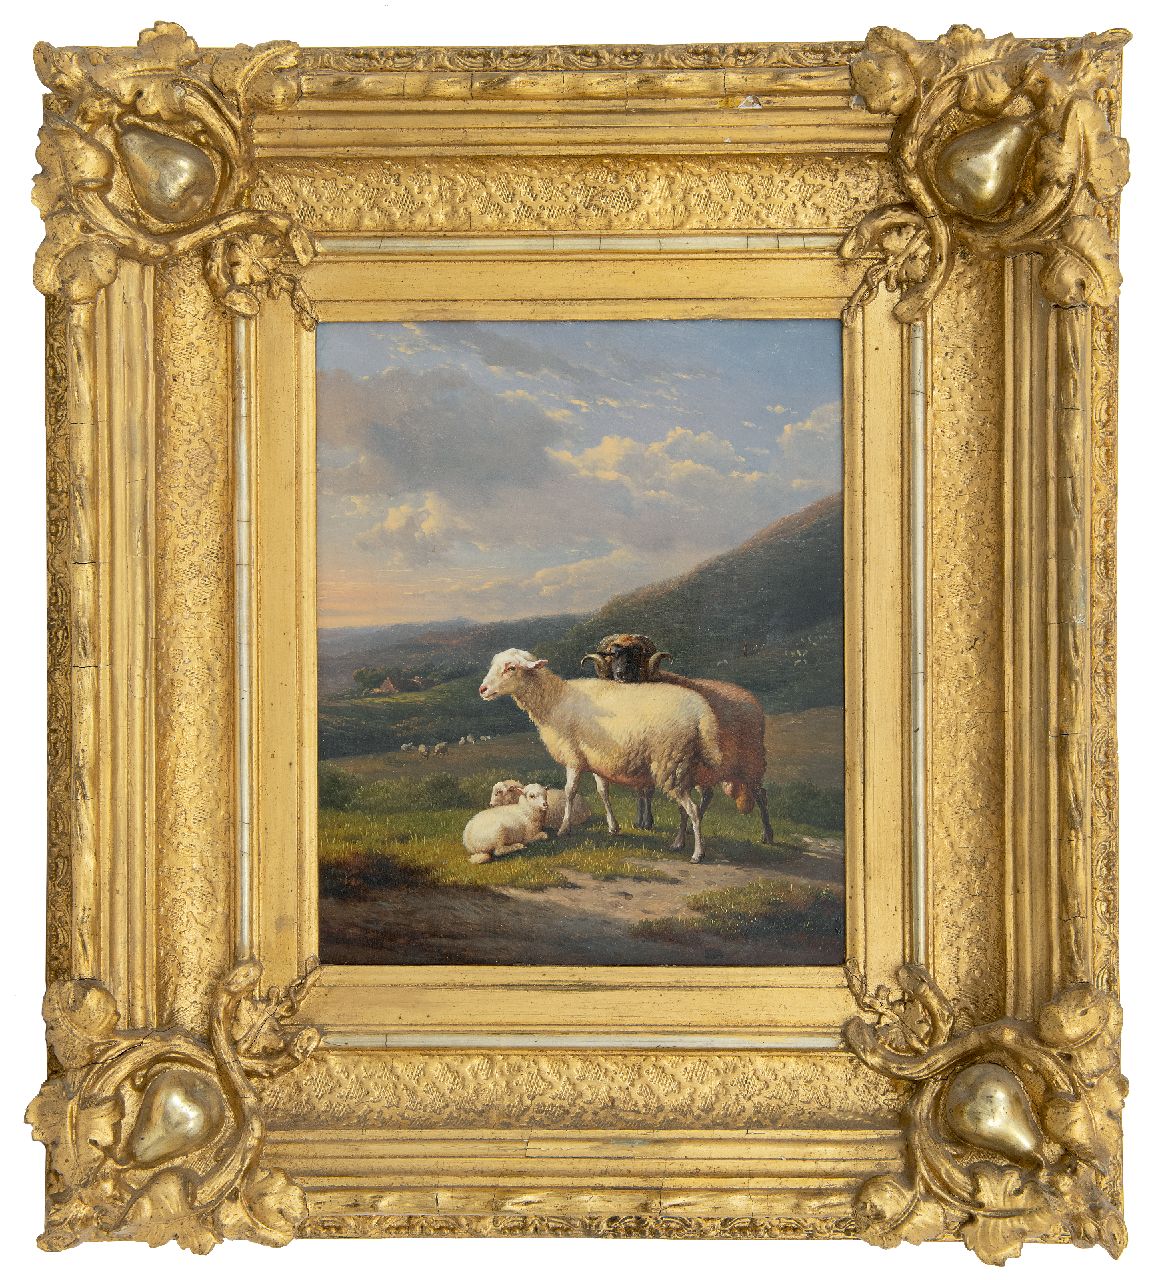 Severdonck F. van | Frans van Severdonck | Paintings offered for sale | Sheep in a hilly landscape, oil on panel 30.8 x 25.8 cm